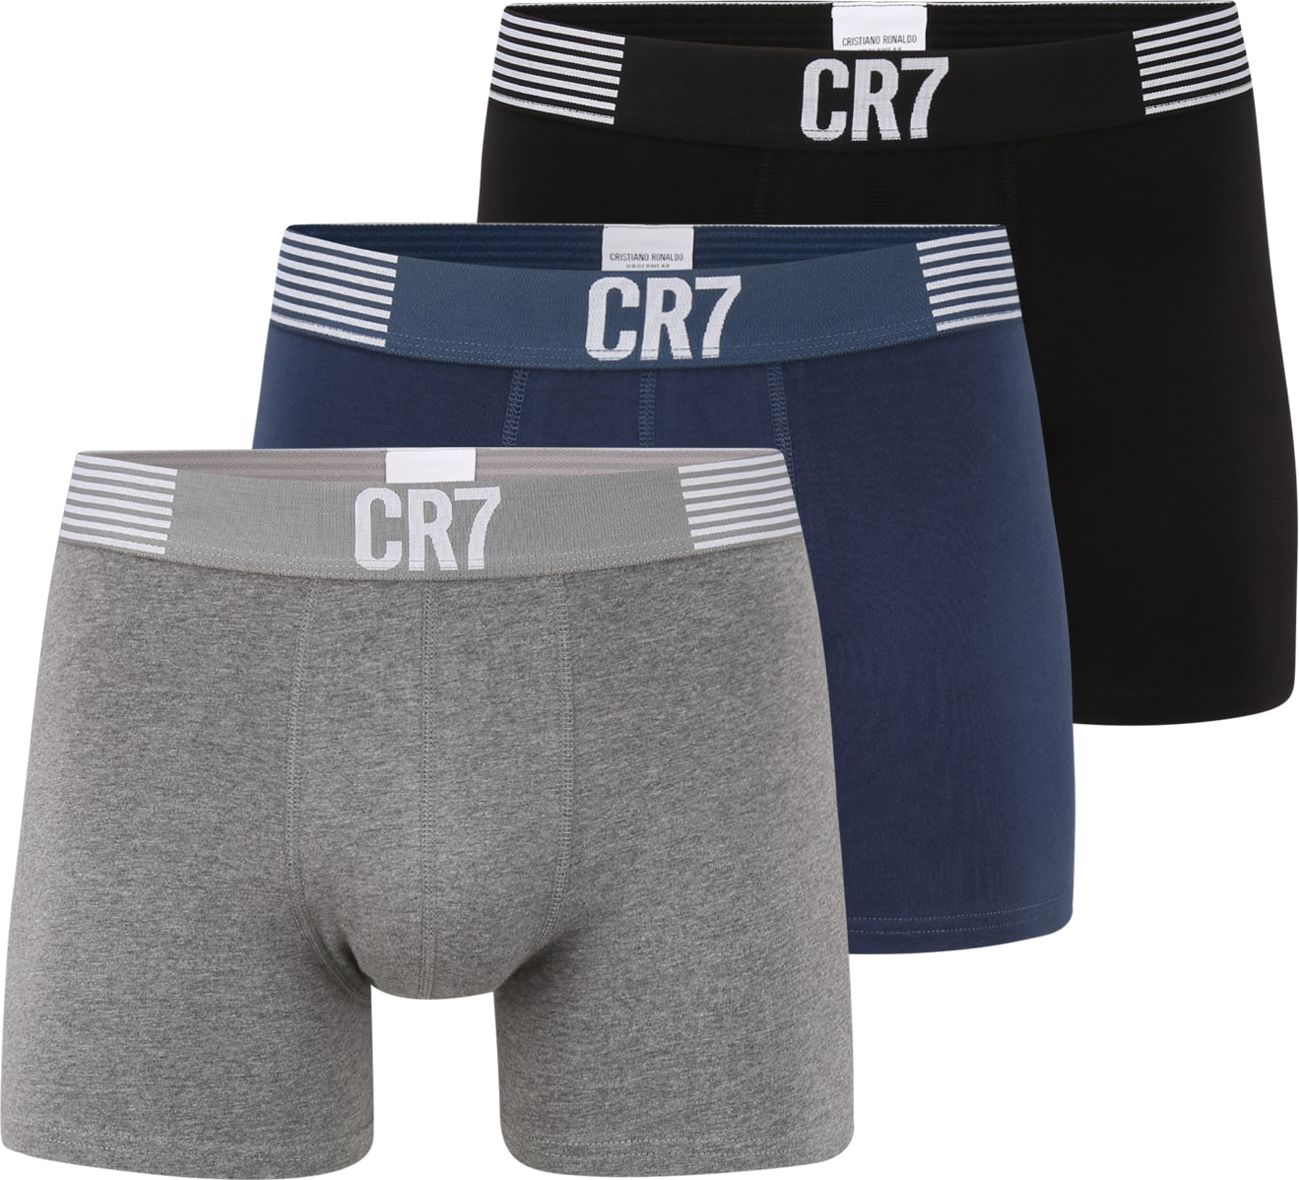 CR7 - Cristiano Ronaldo Boxerky šedý melír / černá / marine modrá / bílá